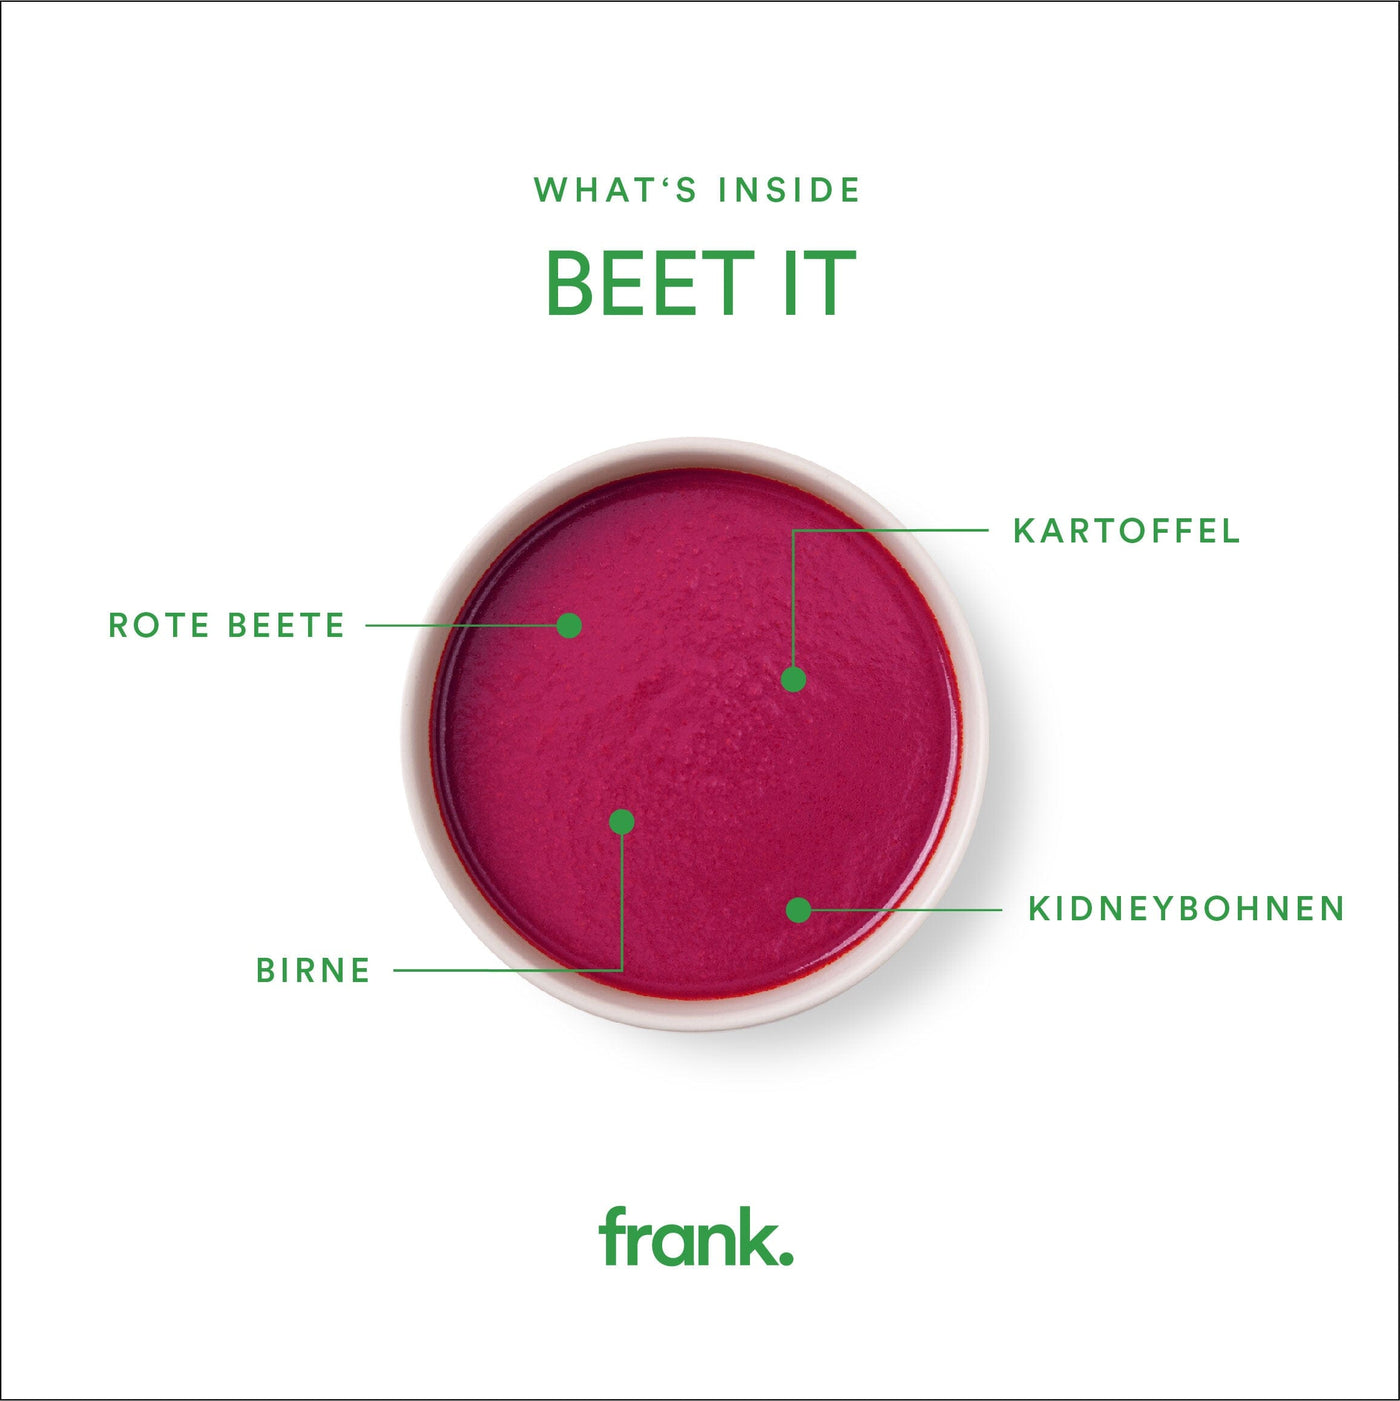 Darstellung der bio Suppe Beet It mit Rote Beete, Birne und Walnuss von frank in einer Schüssel angerichtet